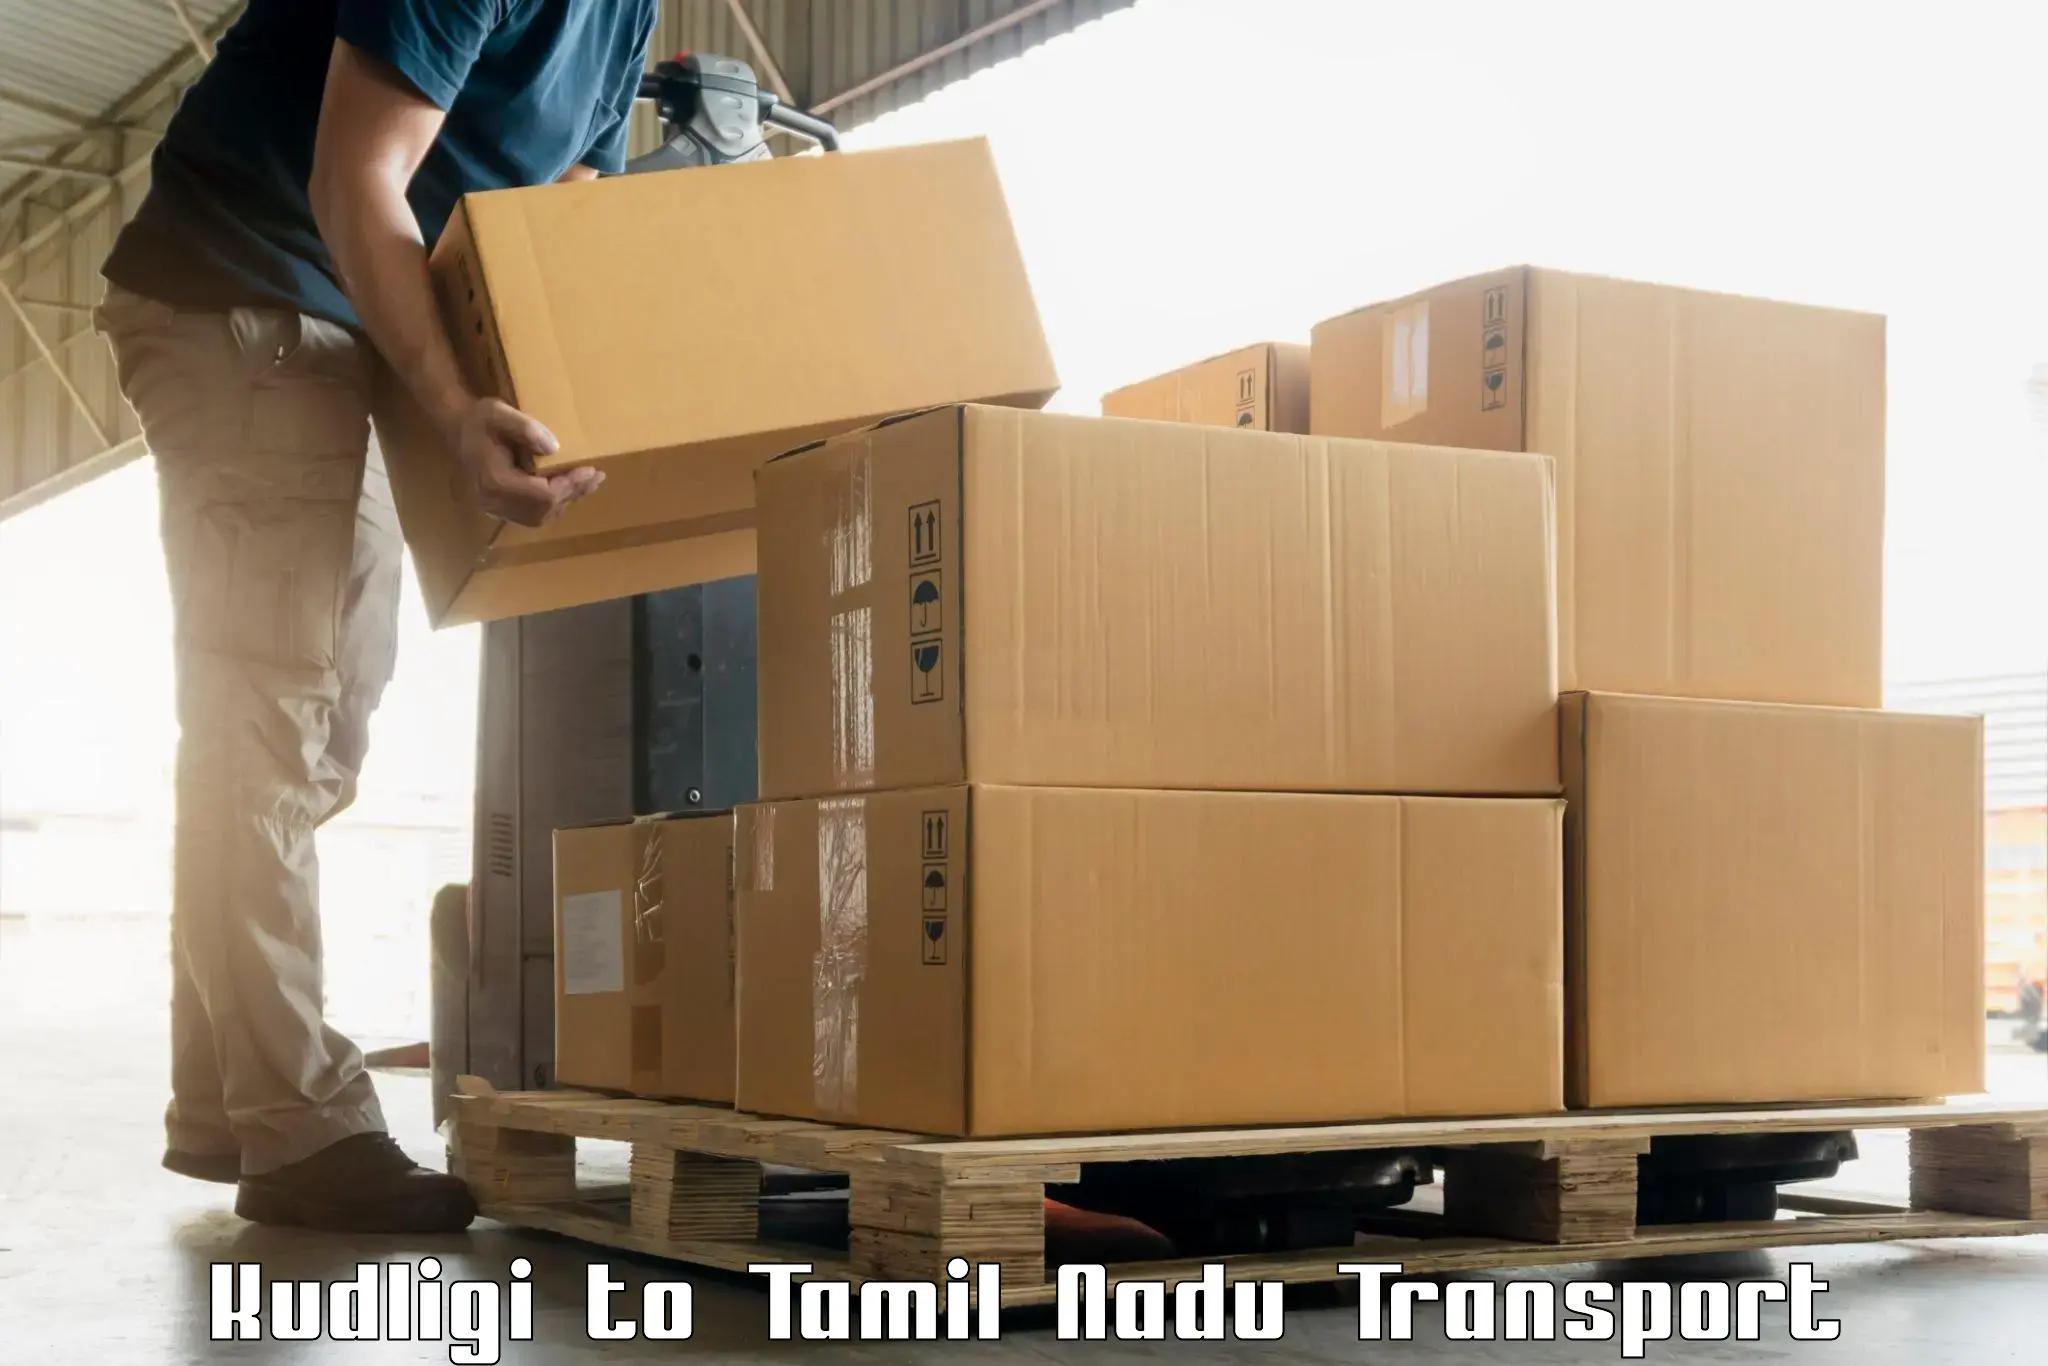 All India transport service Kudligi to Erode